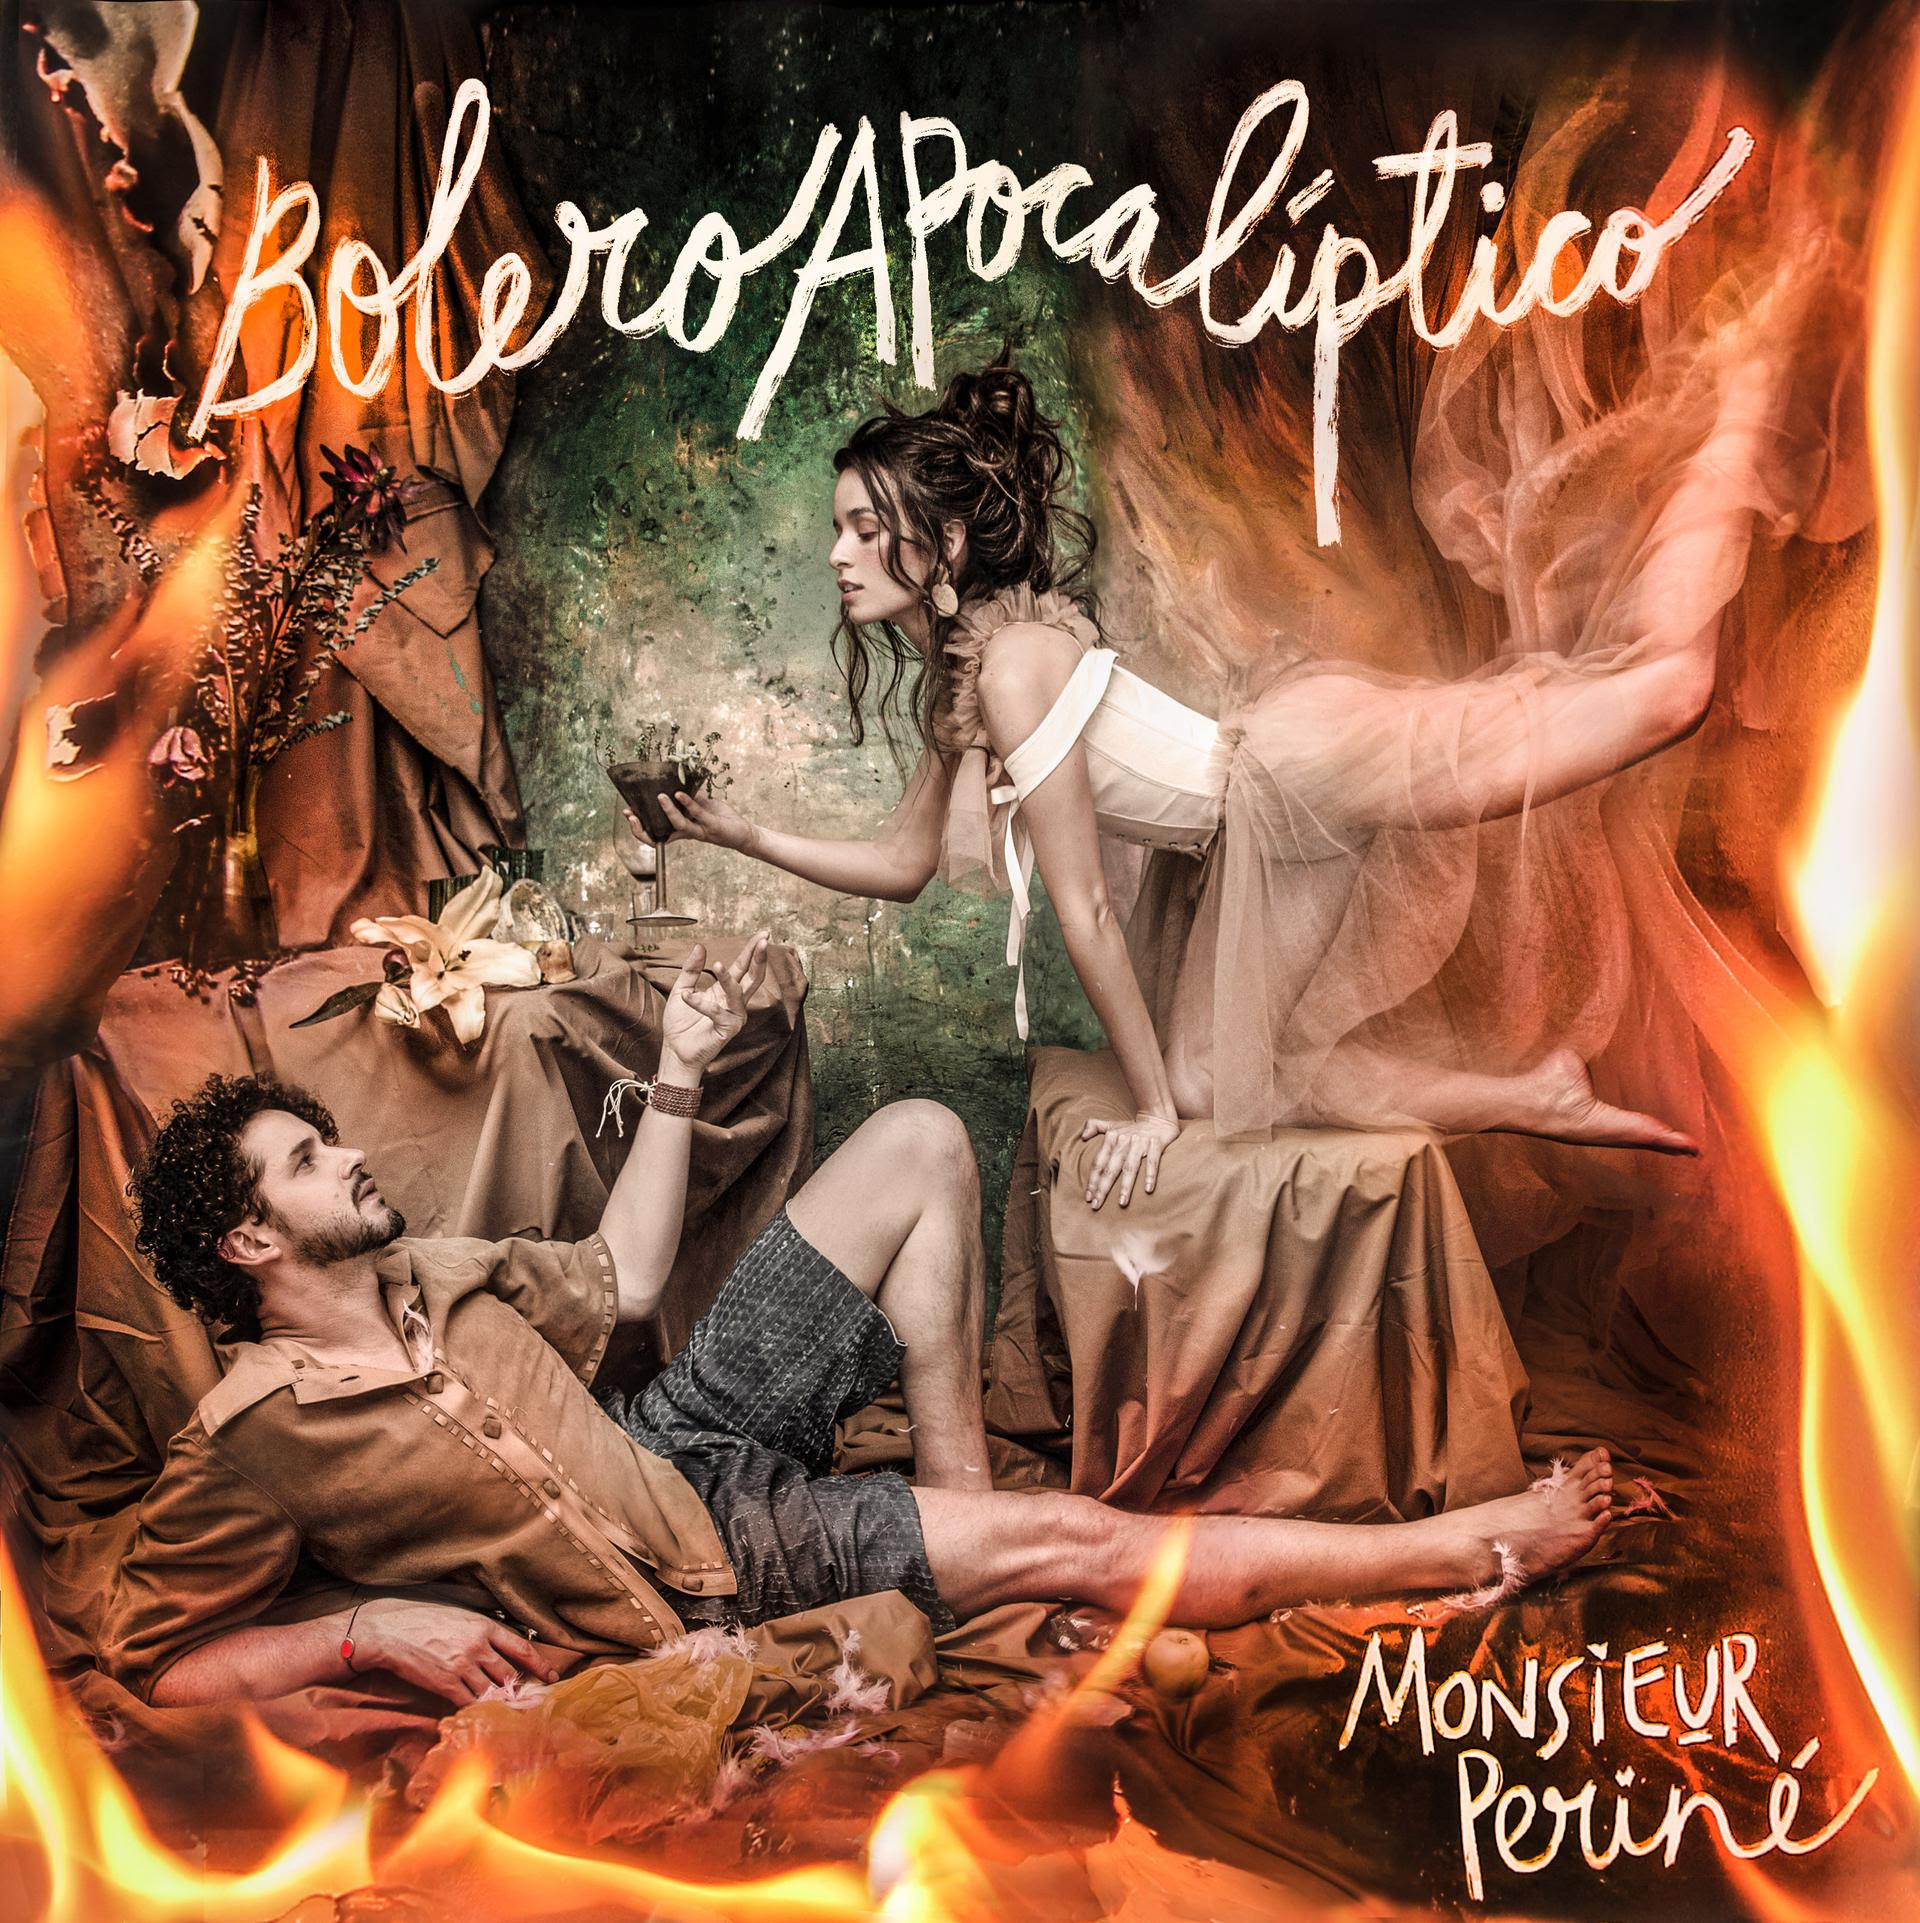 «Prométeme» el nuevo video de Monsieur Periné hace parte de “Bolero Apocalíptico” su cuarto álbum de estudio – @monsieurperine